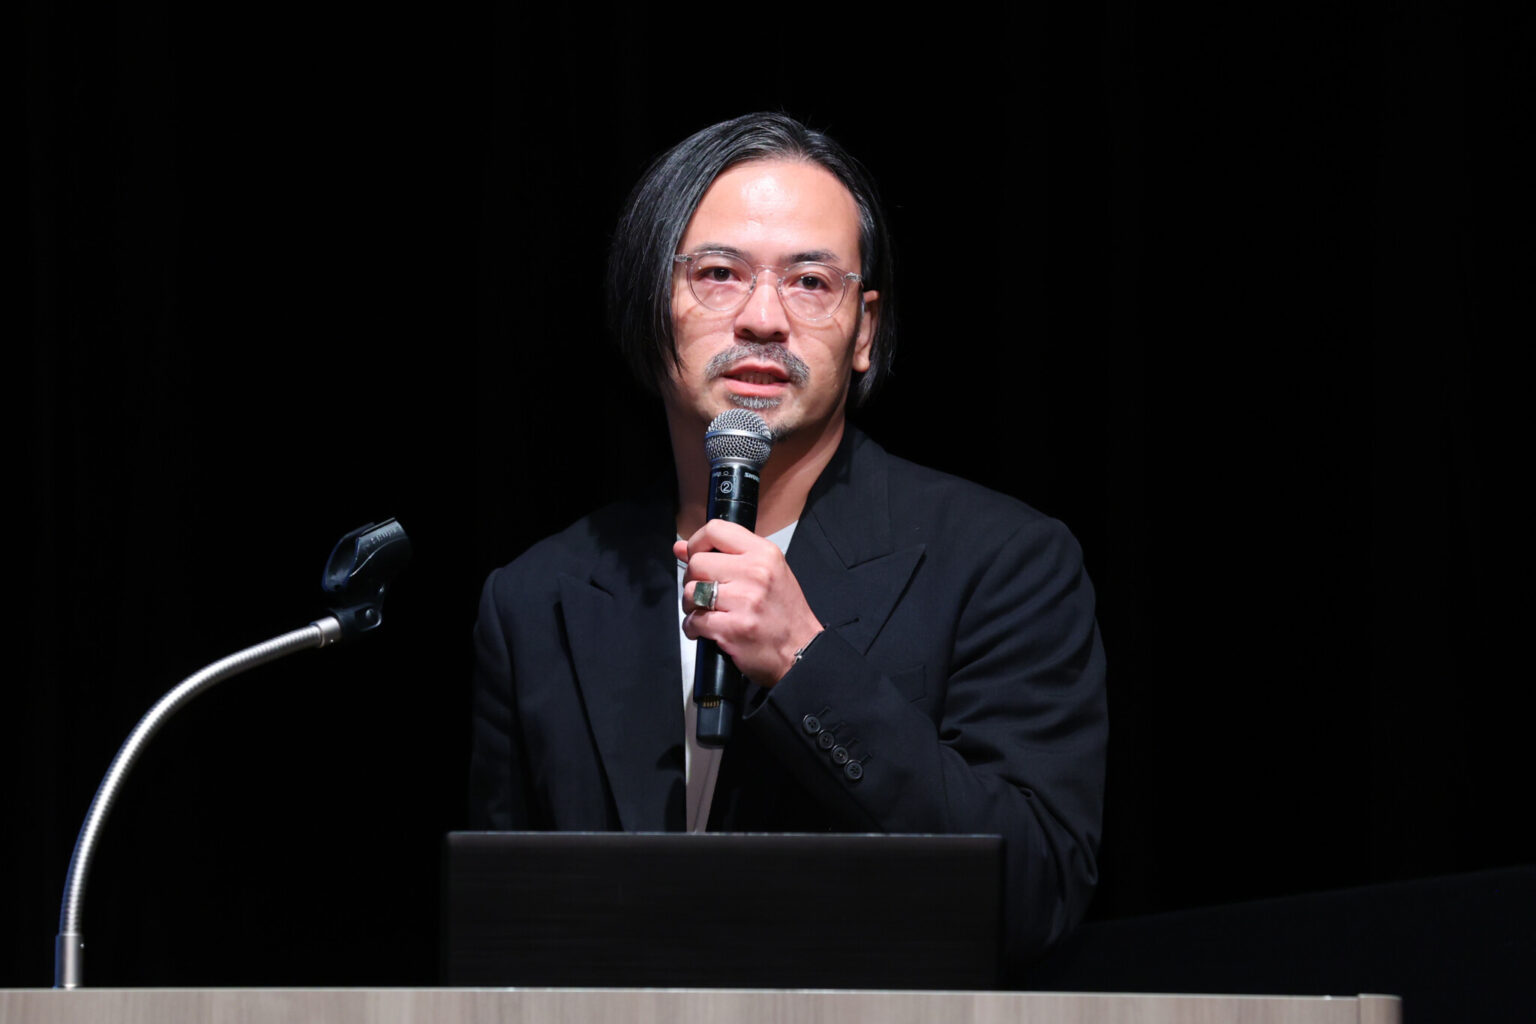 〈LIFULL〉の執行役員CCOで、『地球料理-Earth Cuisine-』のクリエイティブディレクターを務める川嵜 鋼平さん。